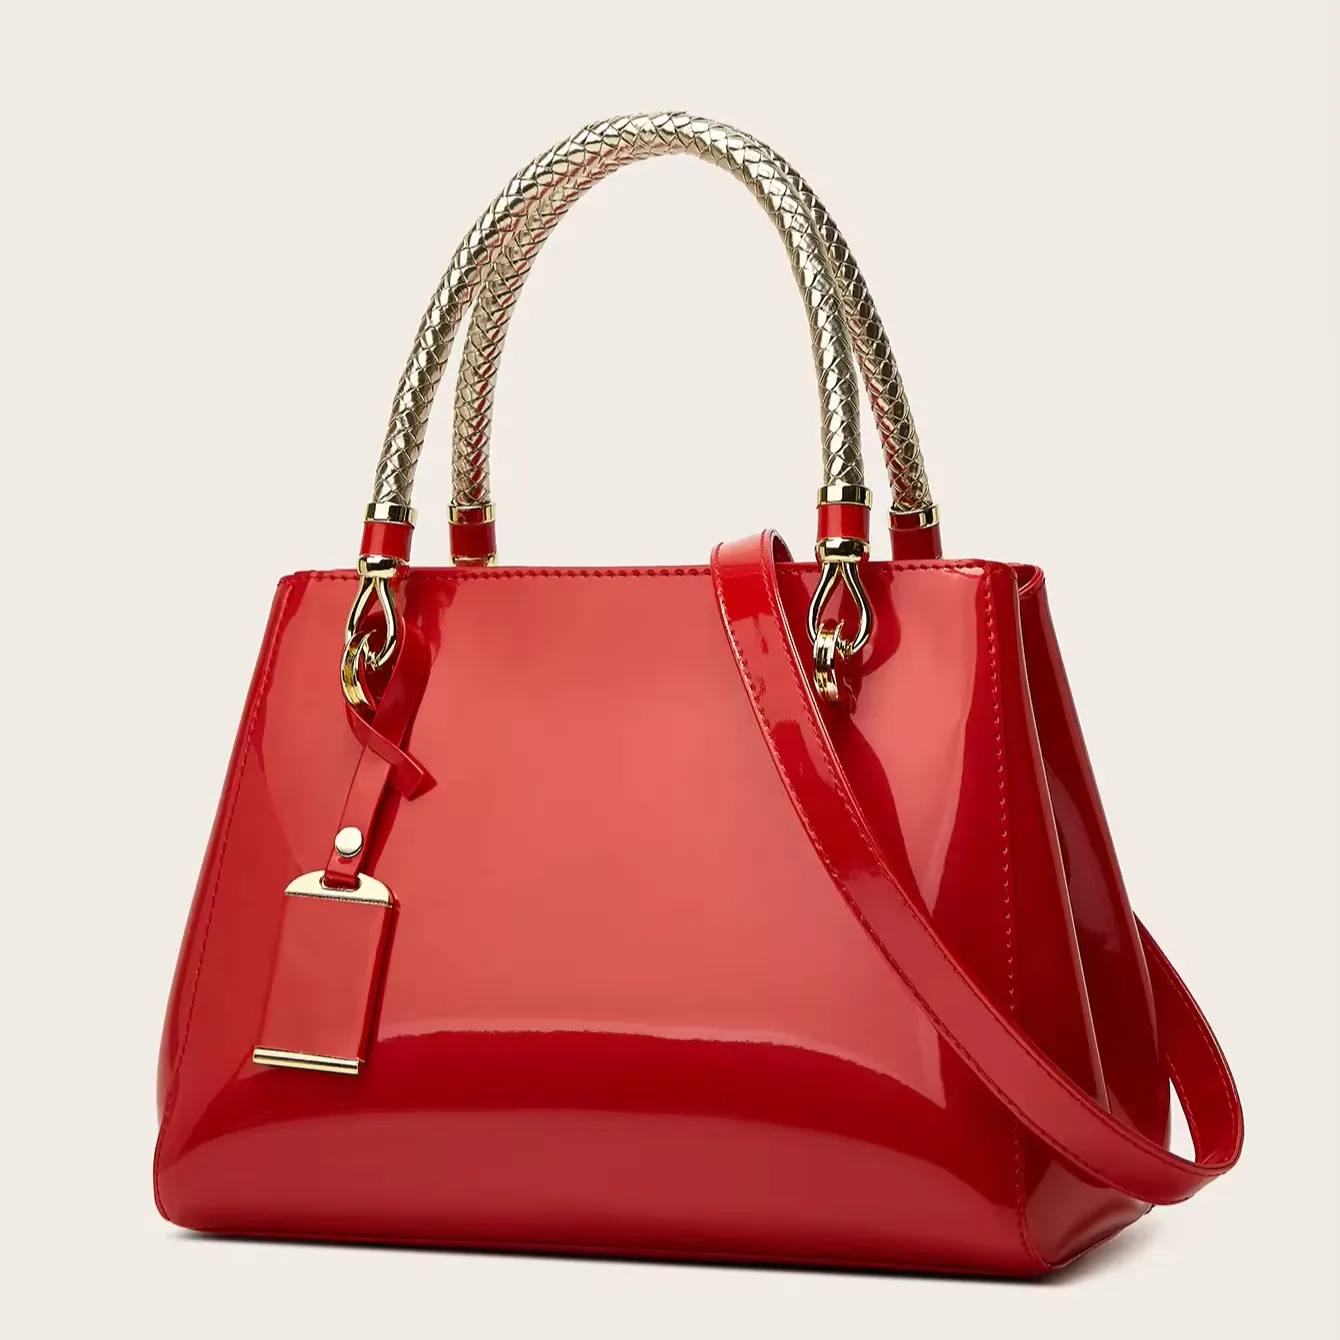 Nuevo bolso de mujer de charol rojo vino-Gran capacidad, textura de alta calidad, elegante bolso de comercio exterior para mujer